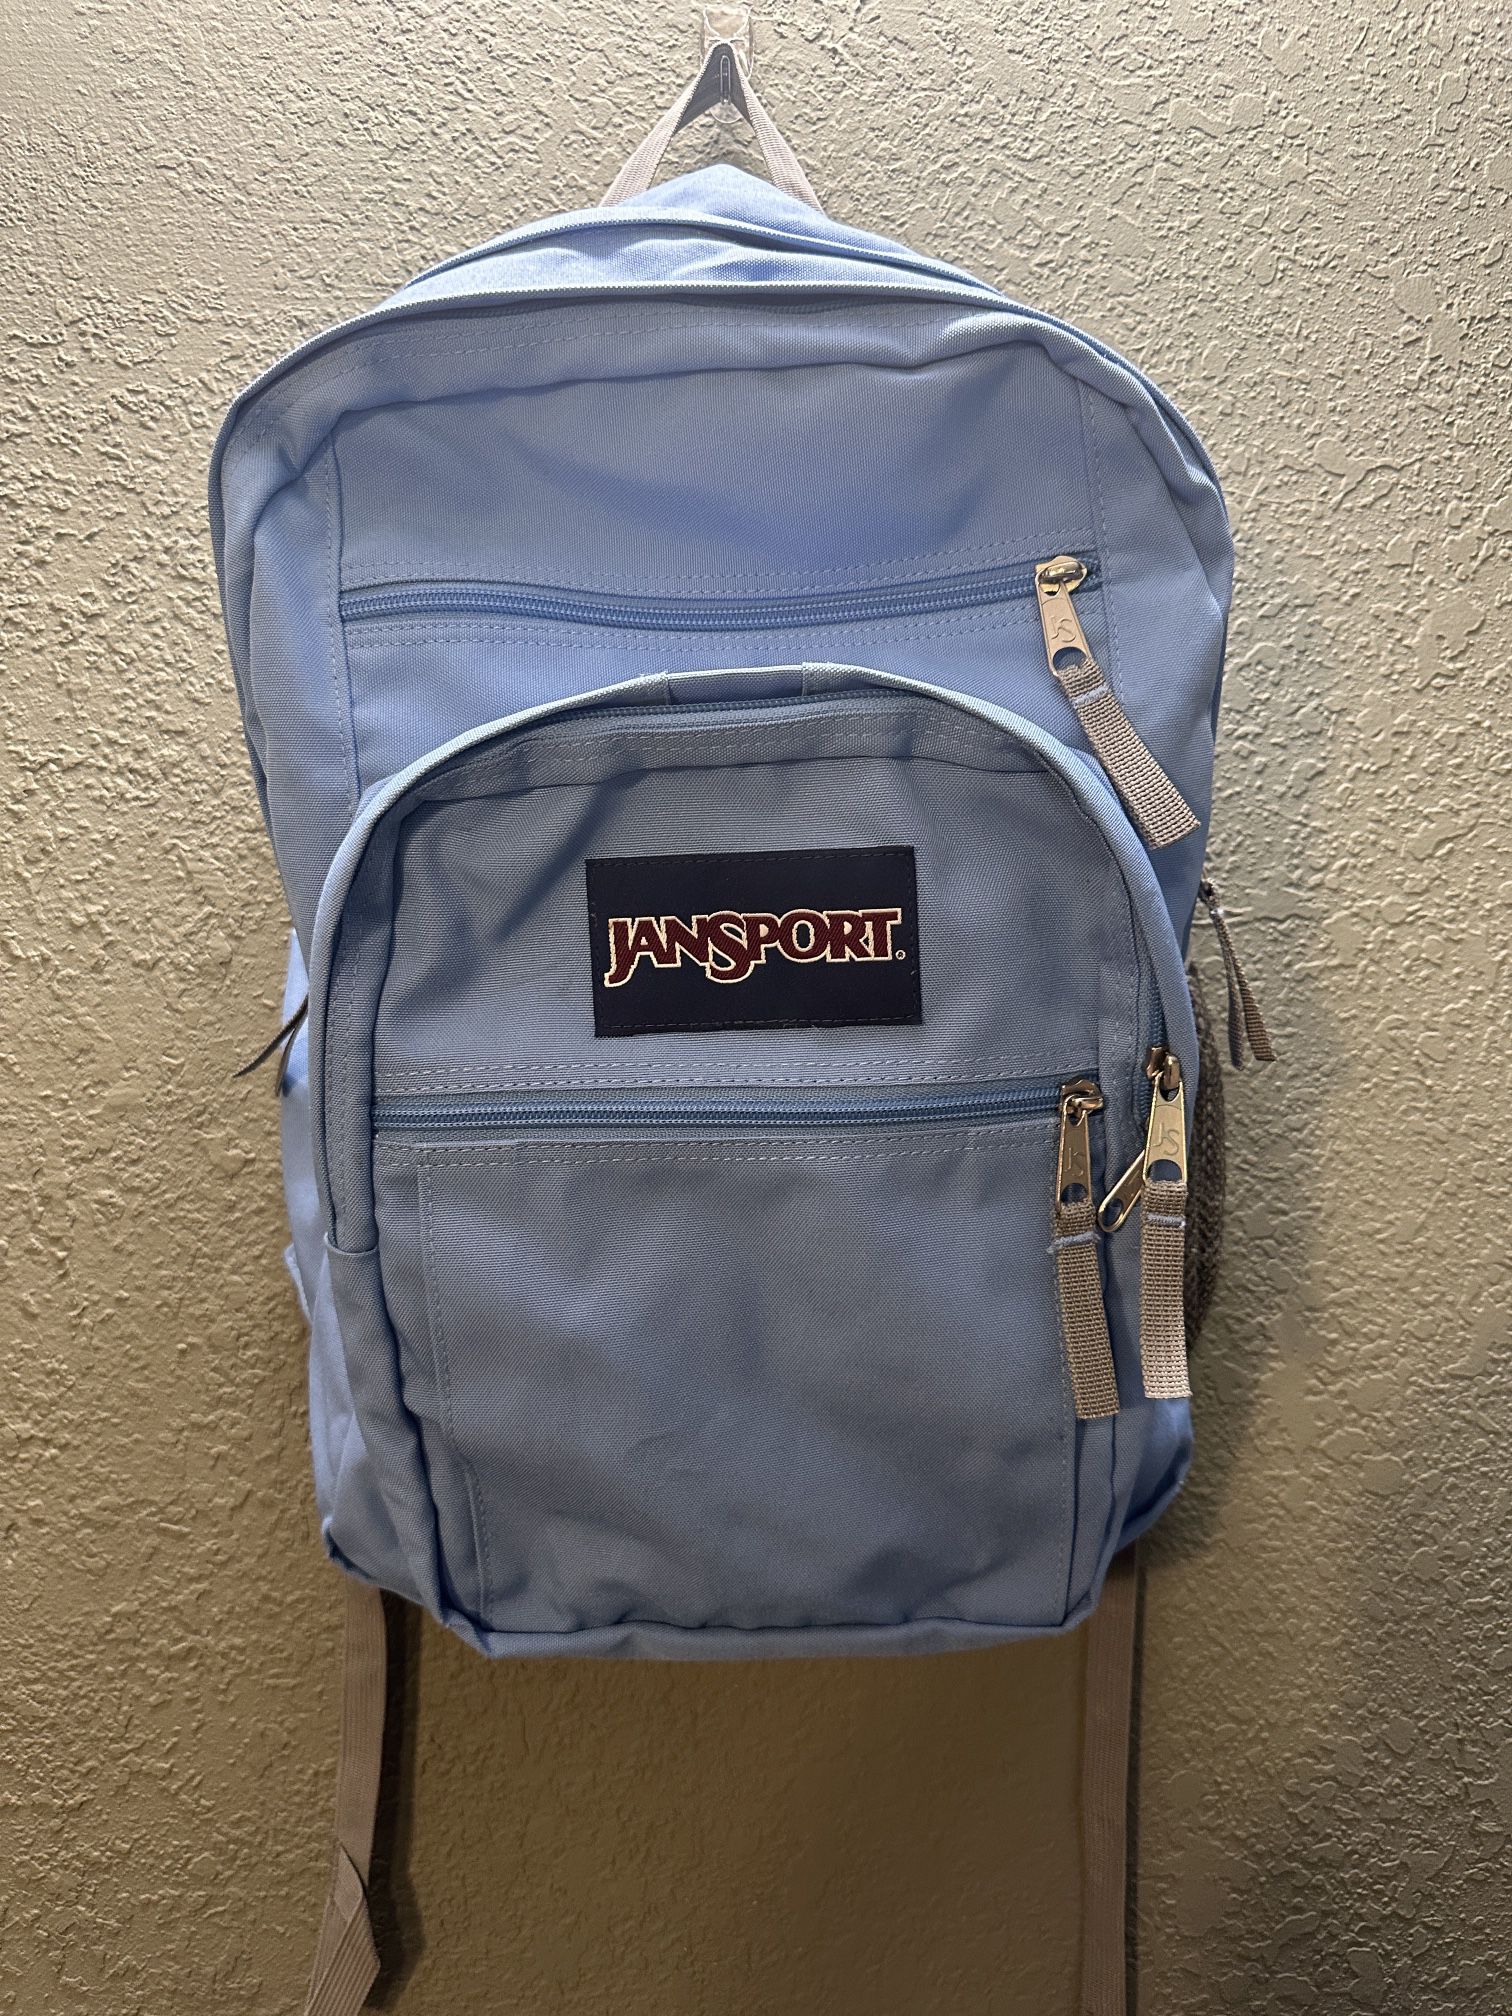 Jansport Backpack Light Blue 5 Pocket for Sale in Acton, CA - OfferUp